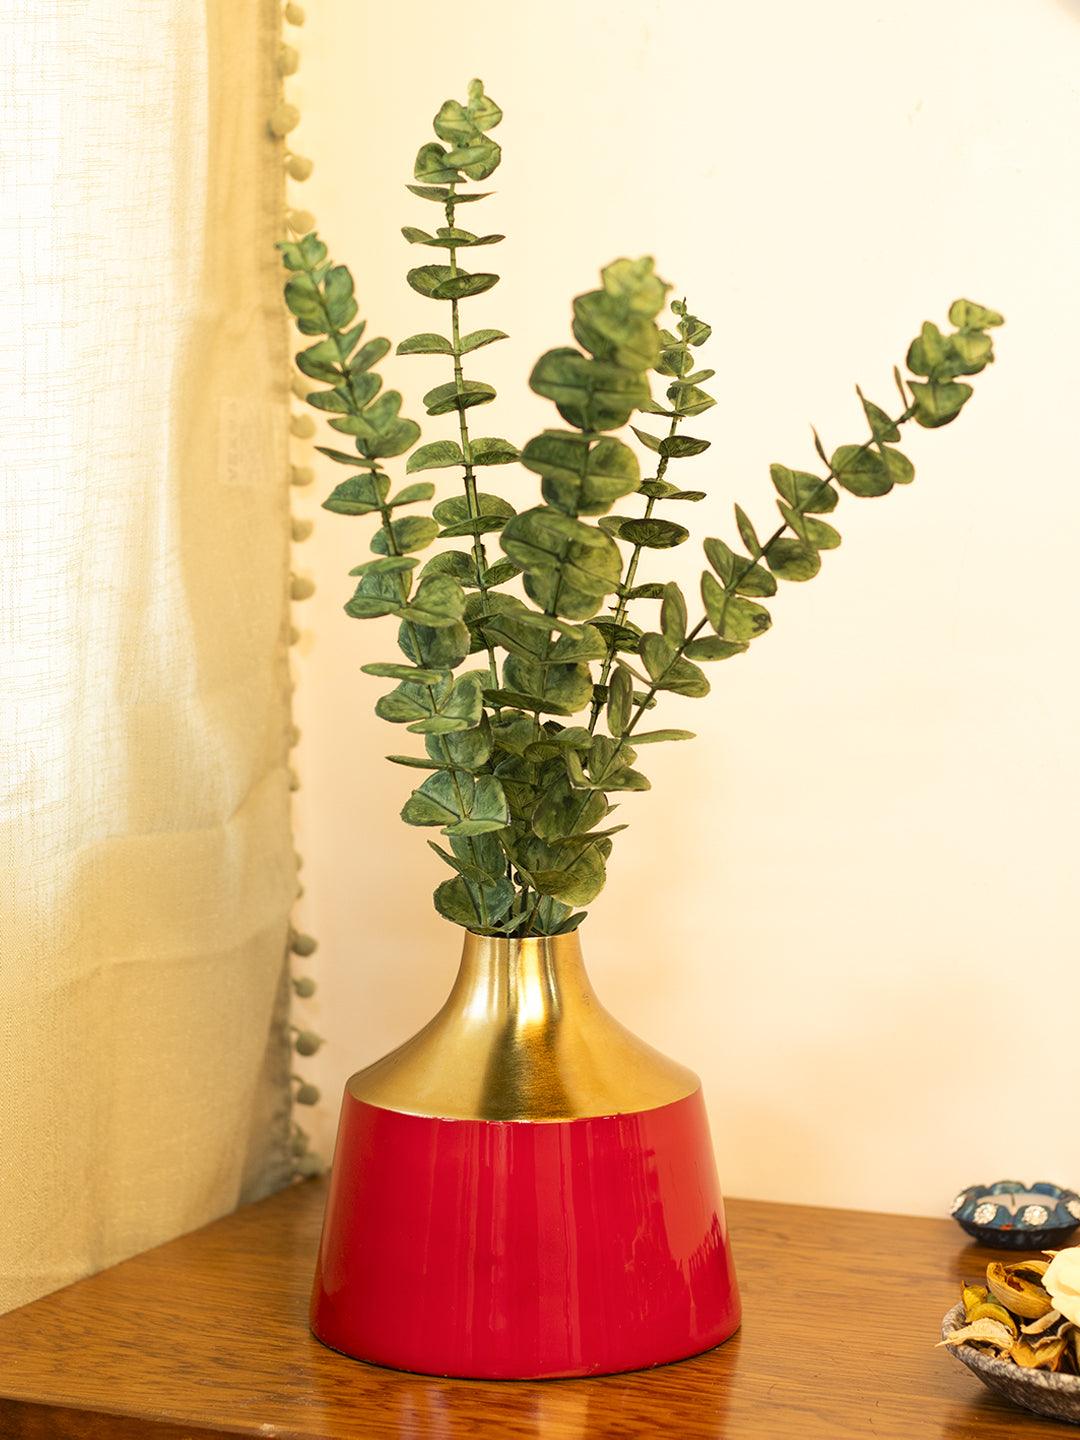 Decorative Enamel Vase - Golden & Red - MARKET 99